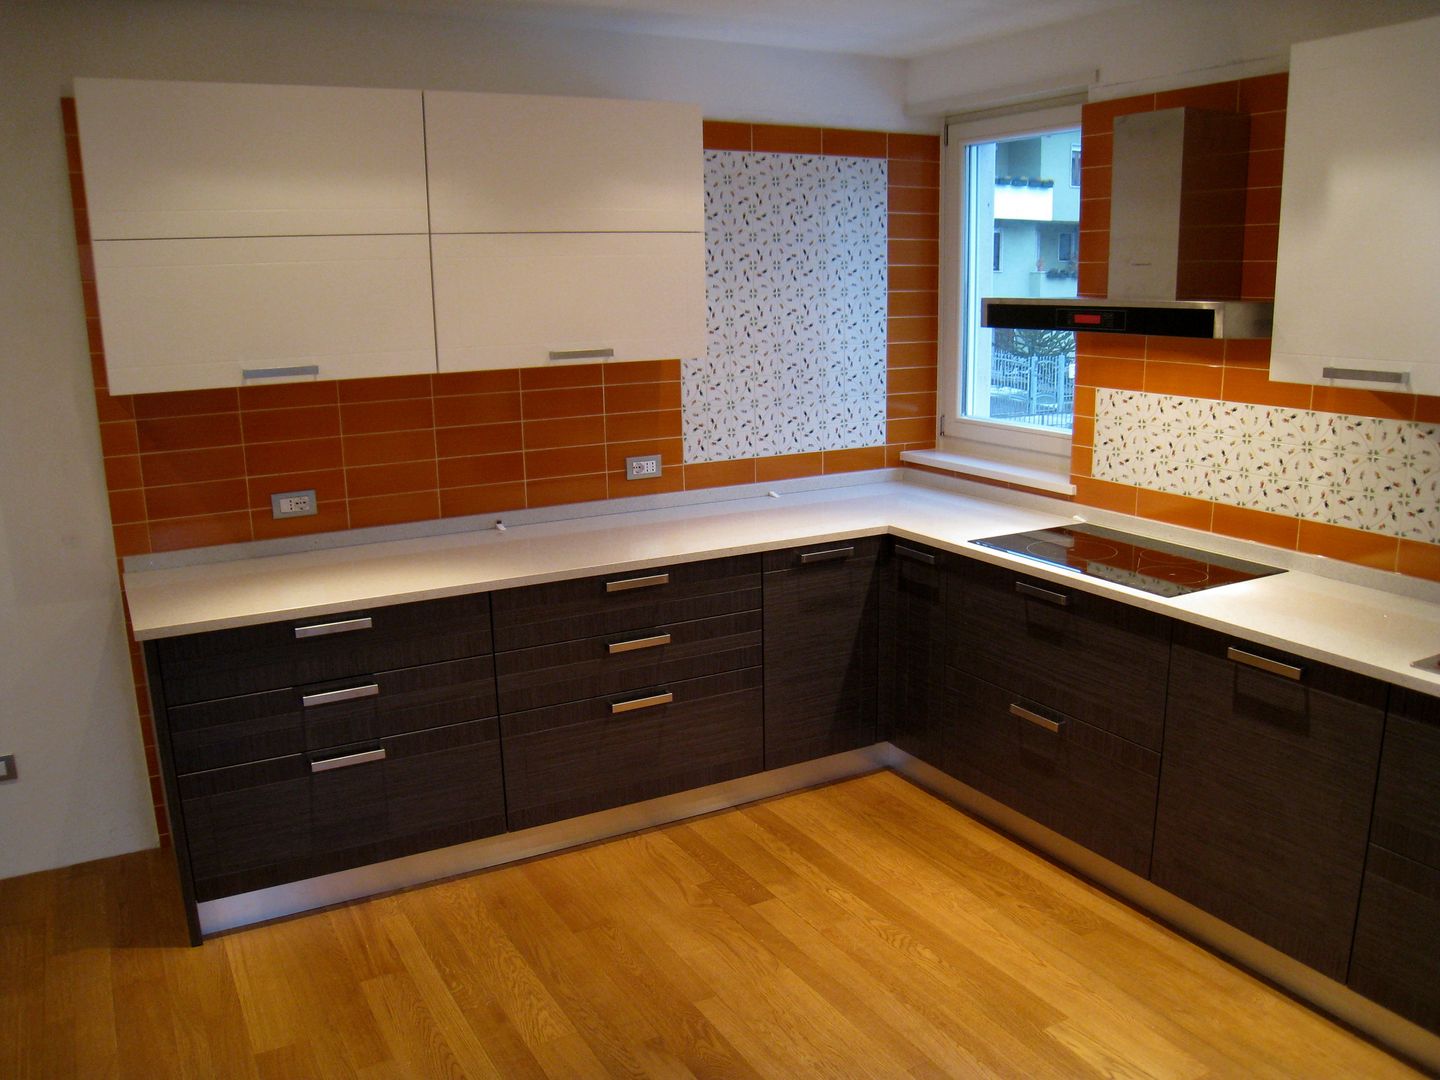 Cucine su misura, ARREDAMENTI PIVA ARREDAMENTI PIVA Rustic style kitchen Bench tops